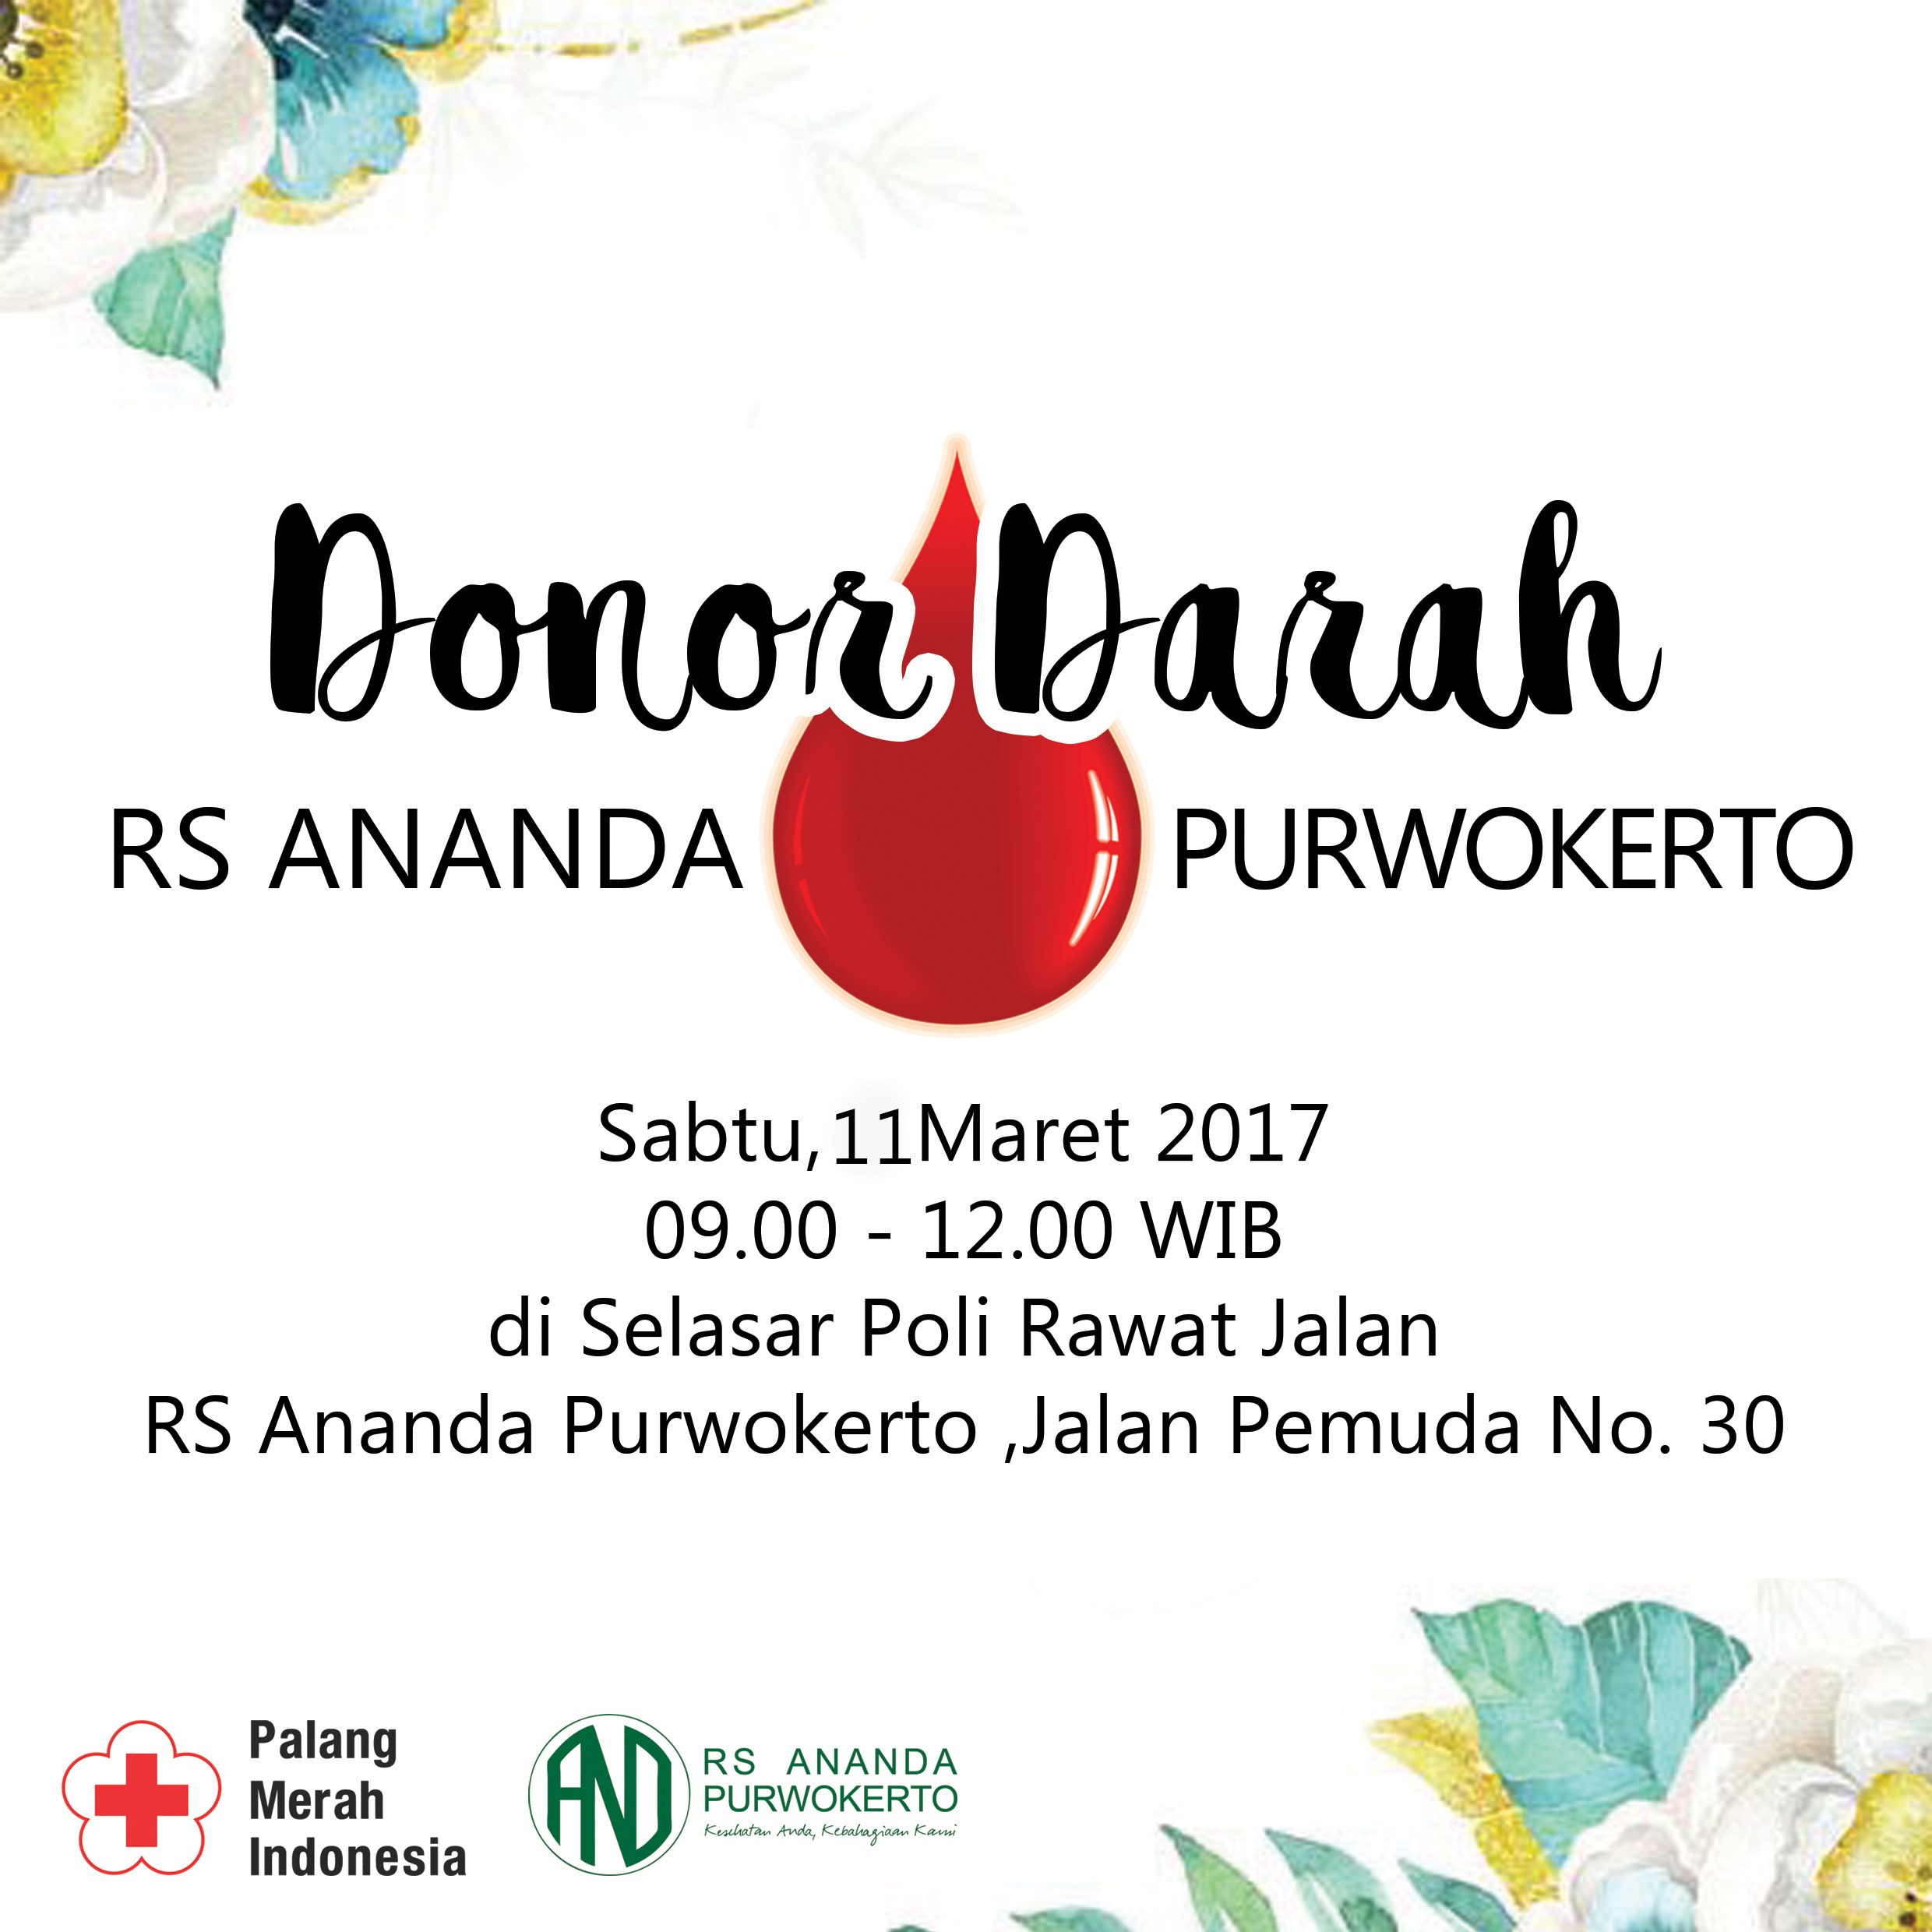 Ikuti Donor Darah bersama RS Ananda Purwokerto, Sabtu 11 Maret 2017 donor darah